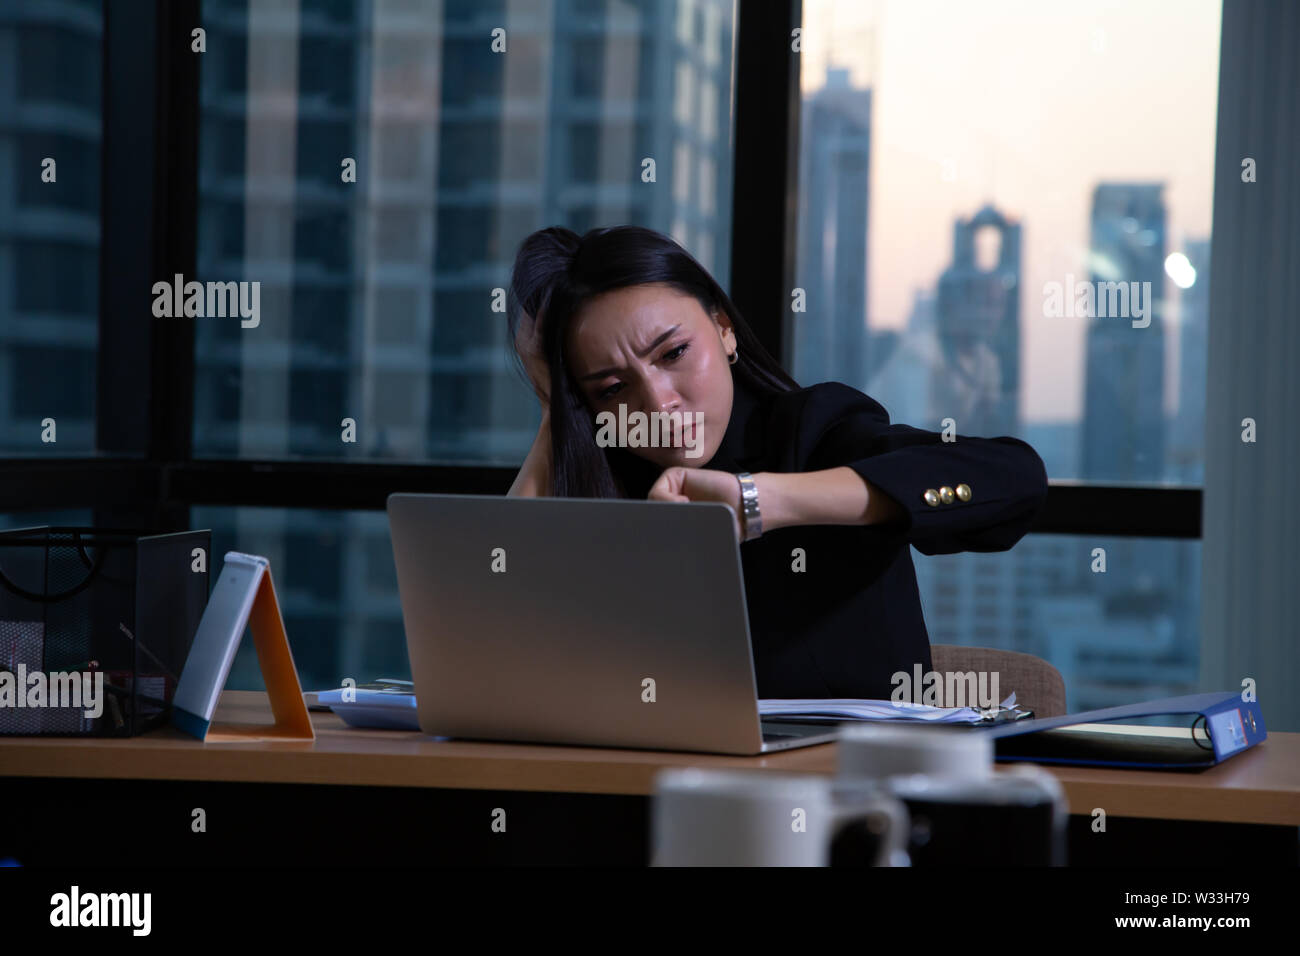 Business woman müde im Büro am Schreibtisch mit Computer und Überstunden Projekt am Arbeitsplatz sitzen Stockfoto